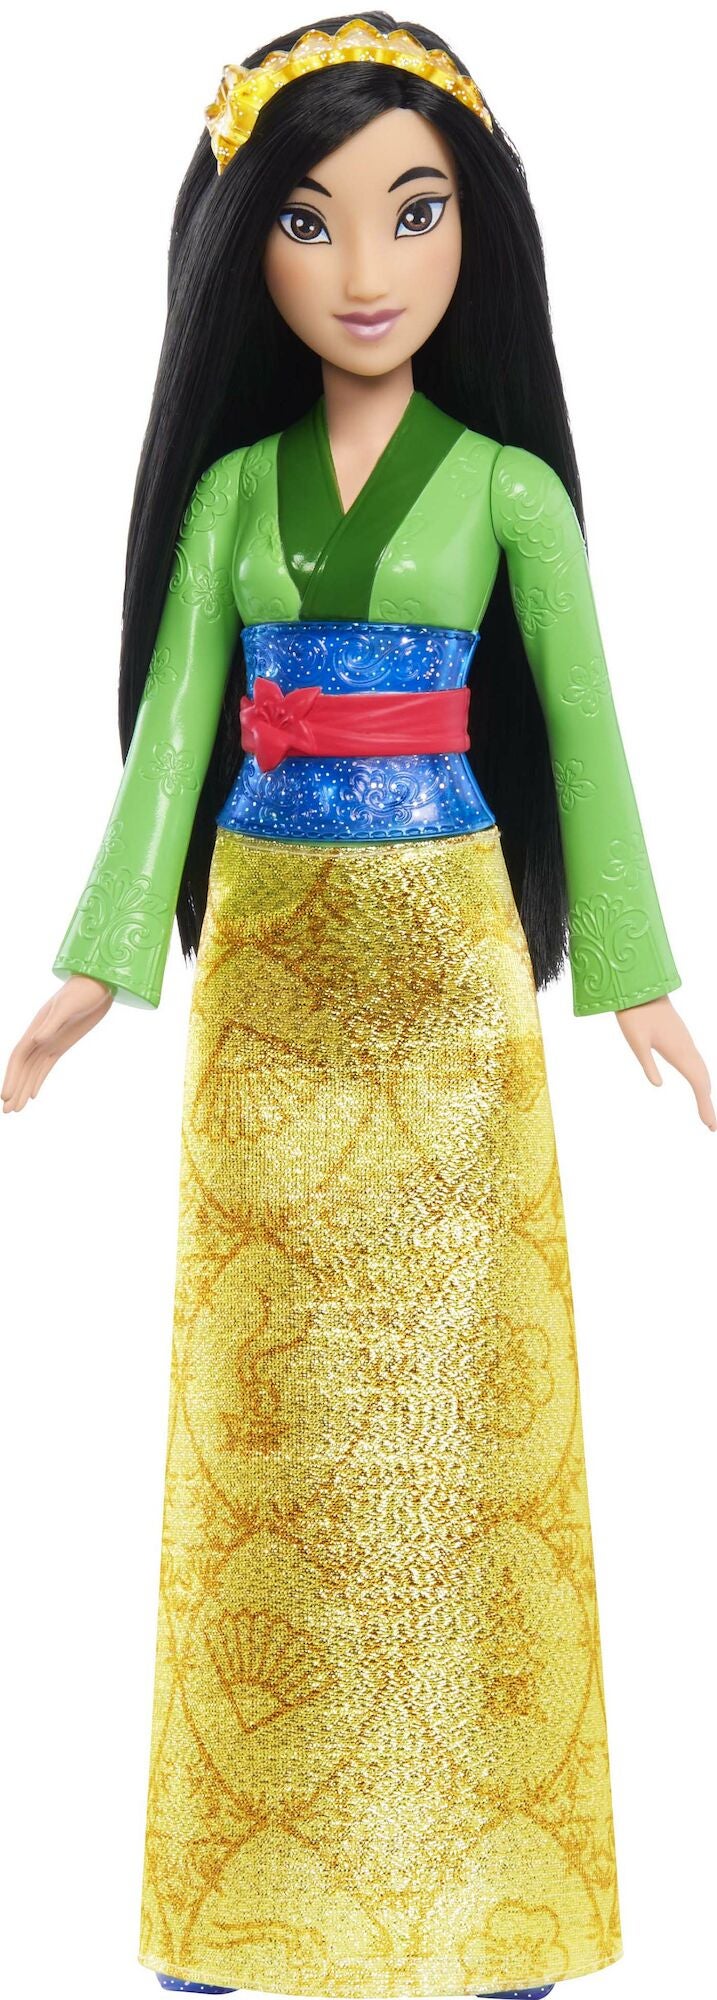 Disney Prinzessinnen Mulan Puppe 28cm von Disney Prinzessin